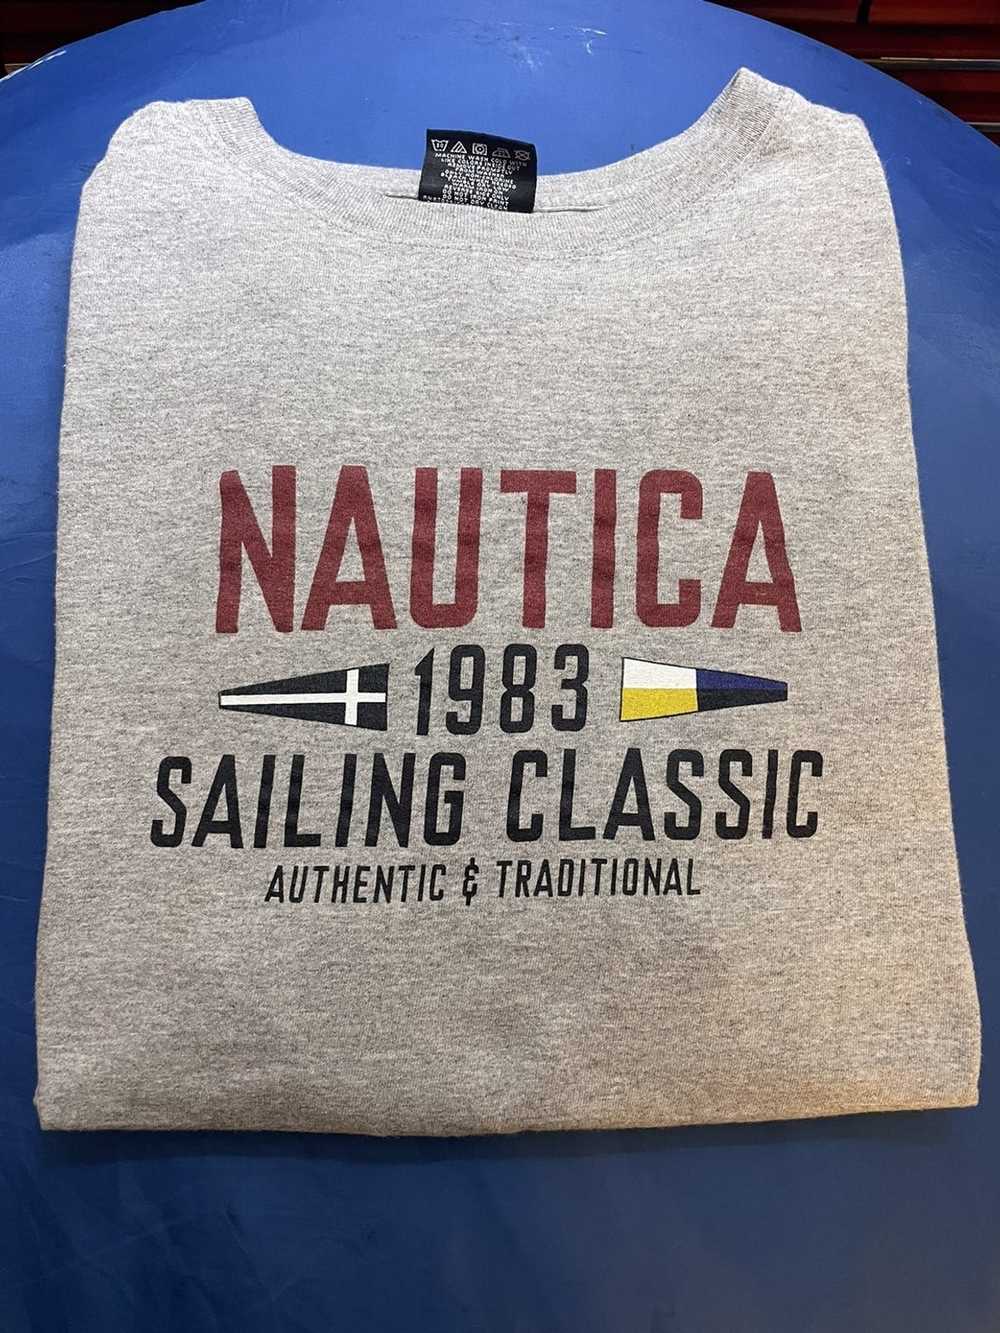 Nautica Nautica Sailing Classic (1983) Tee - image 1